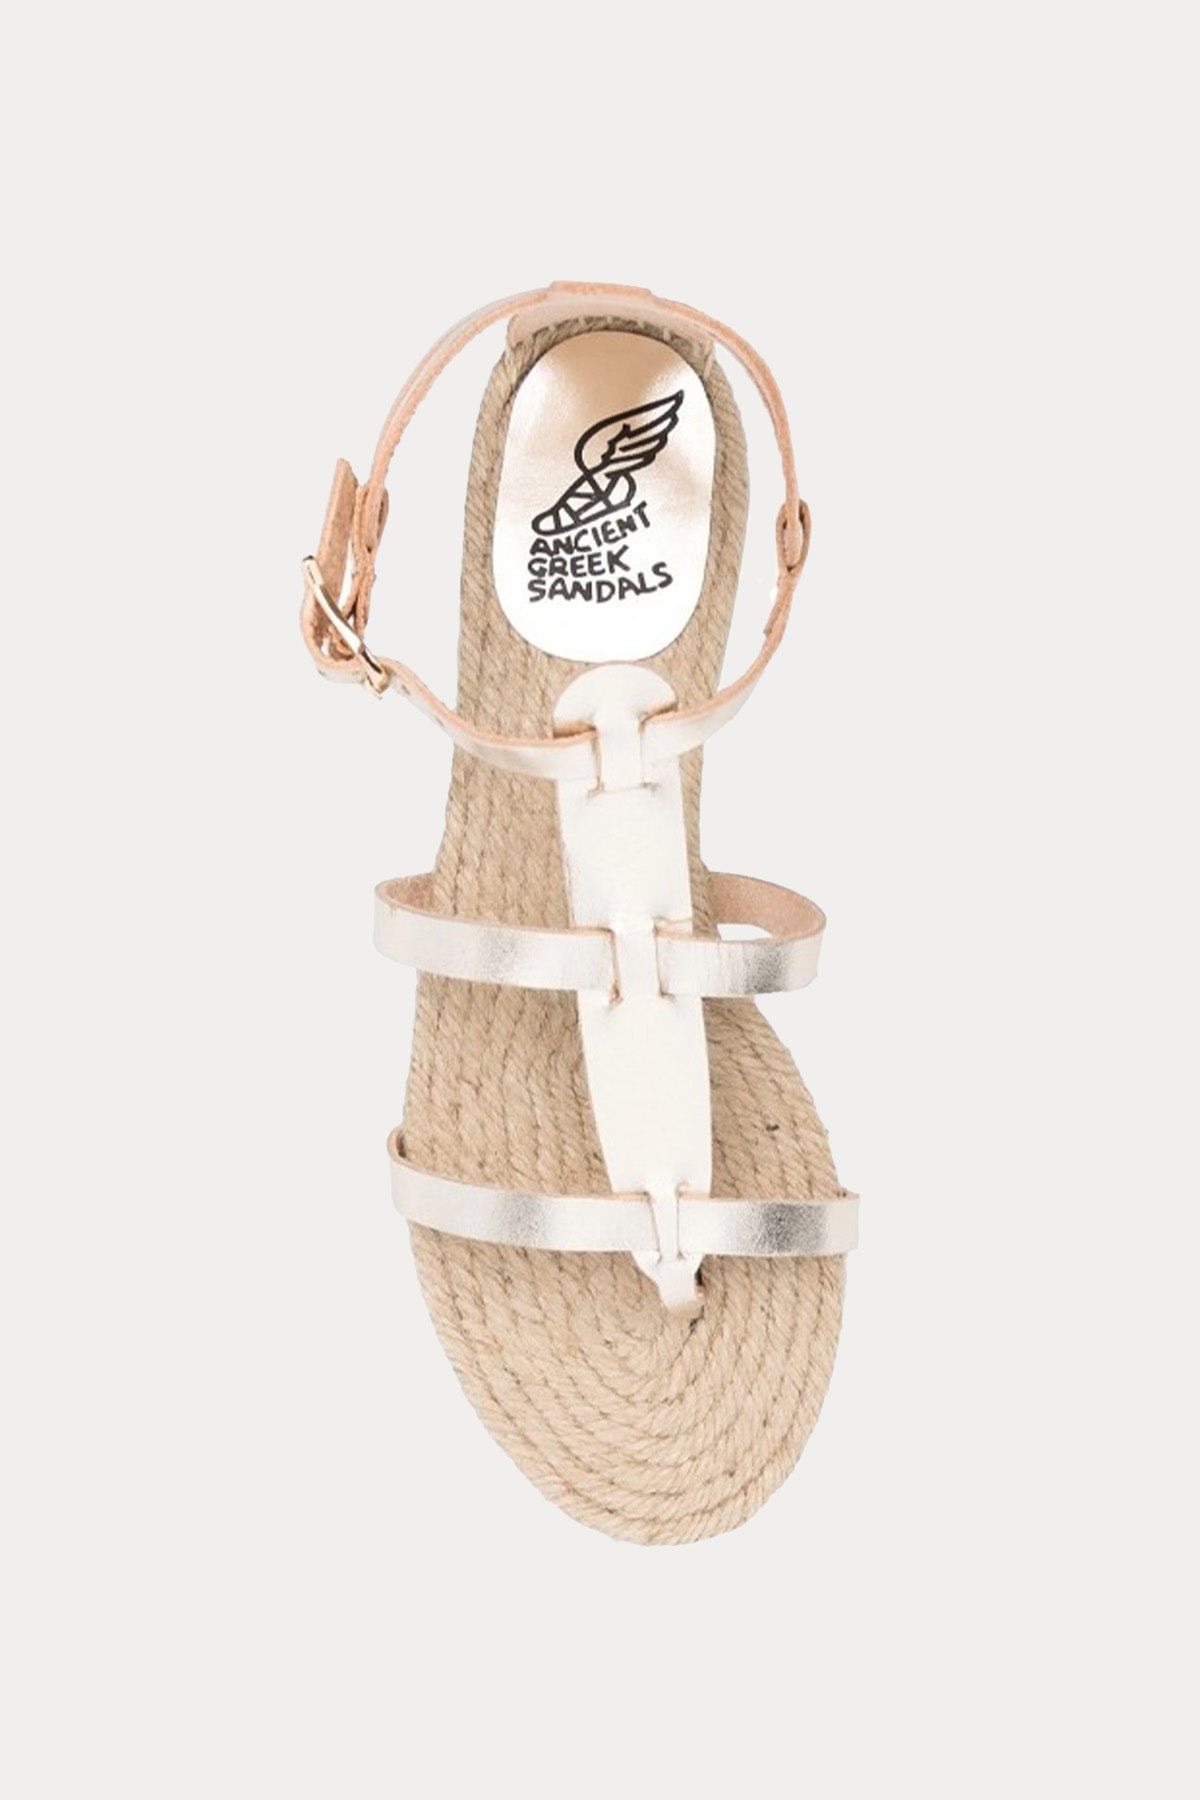 Castaner & Ancient Greek Sandals Deri Sandalet